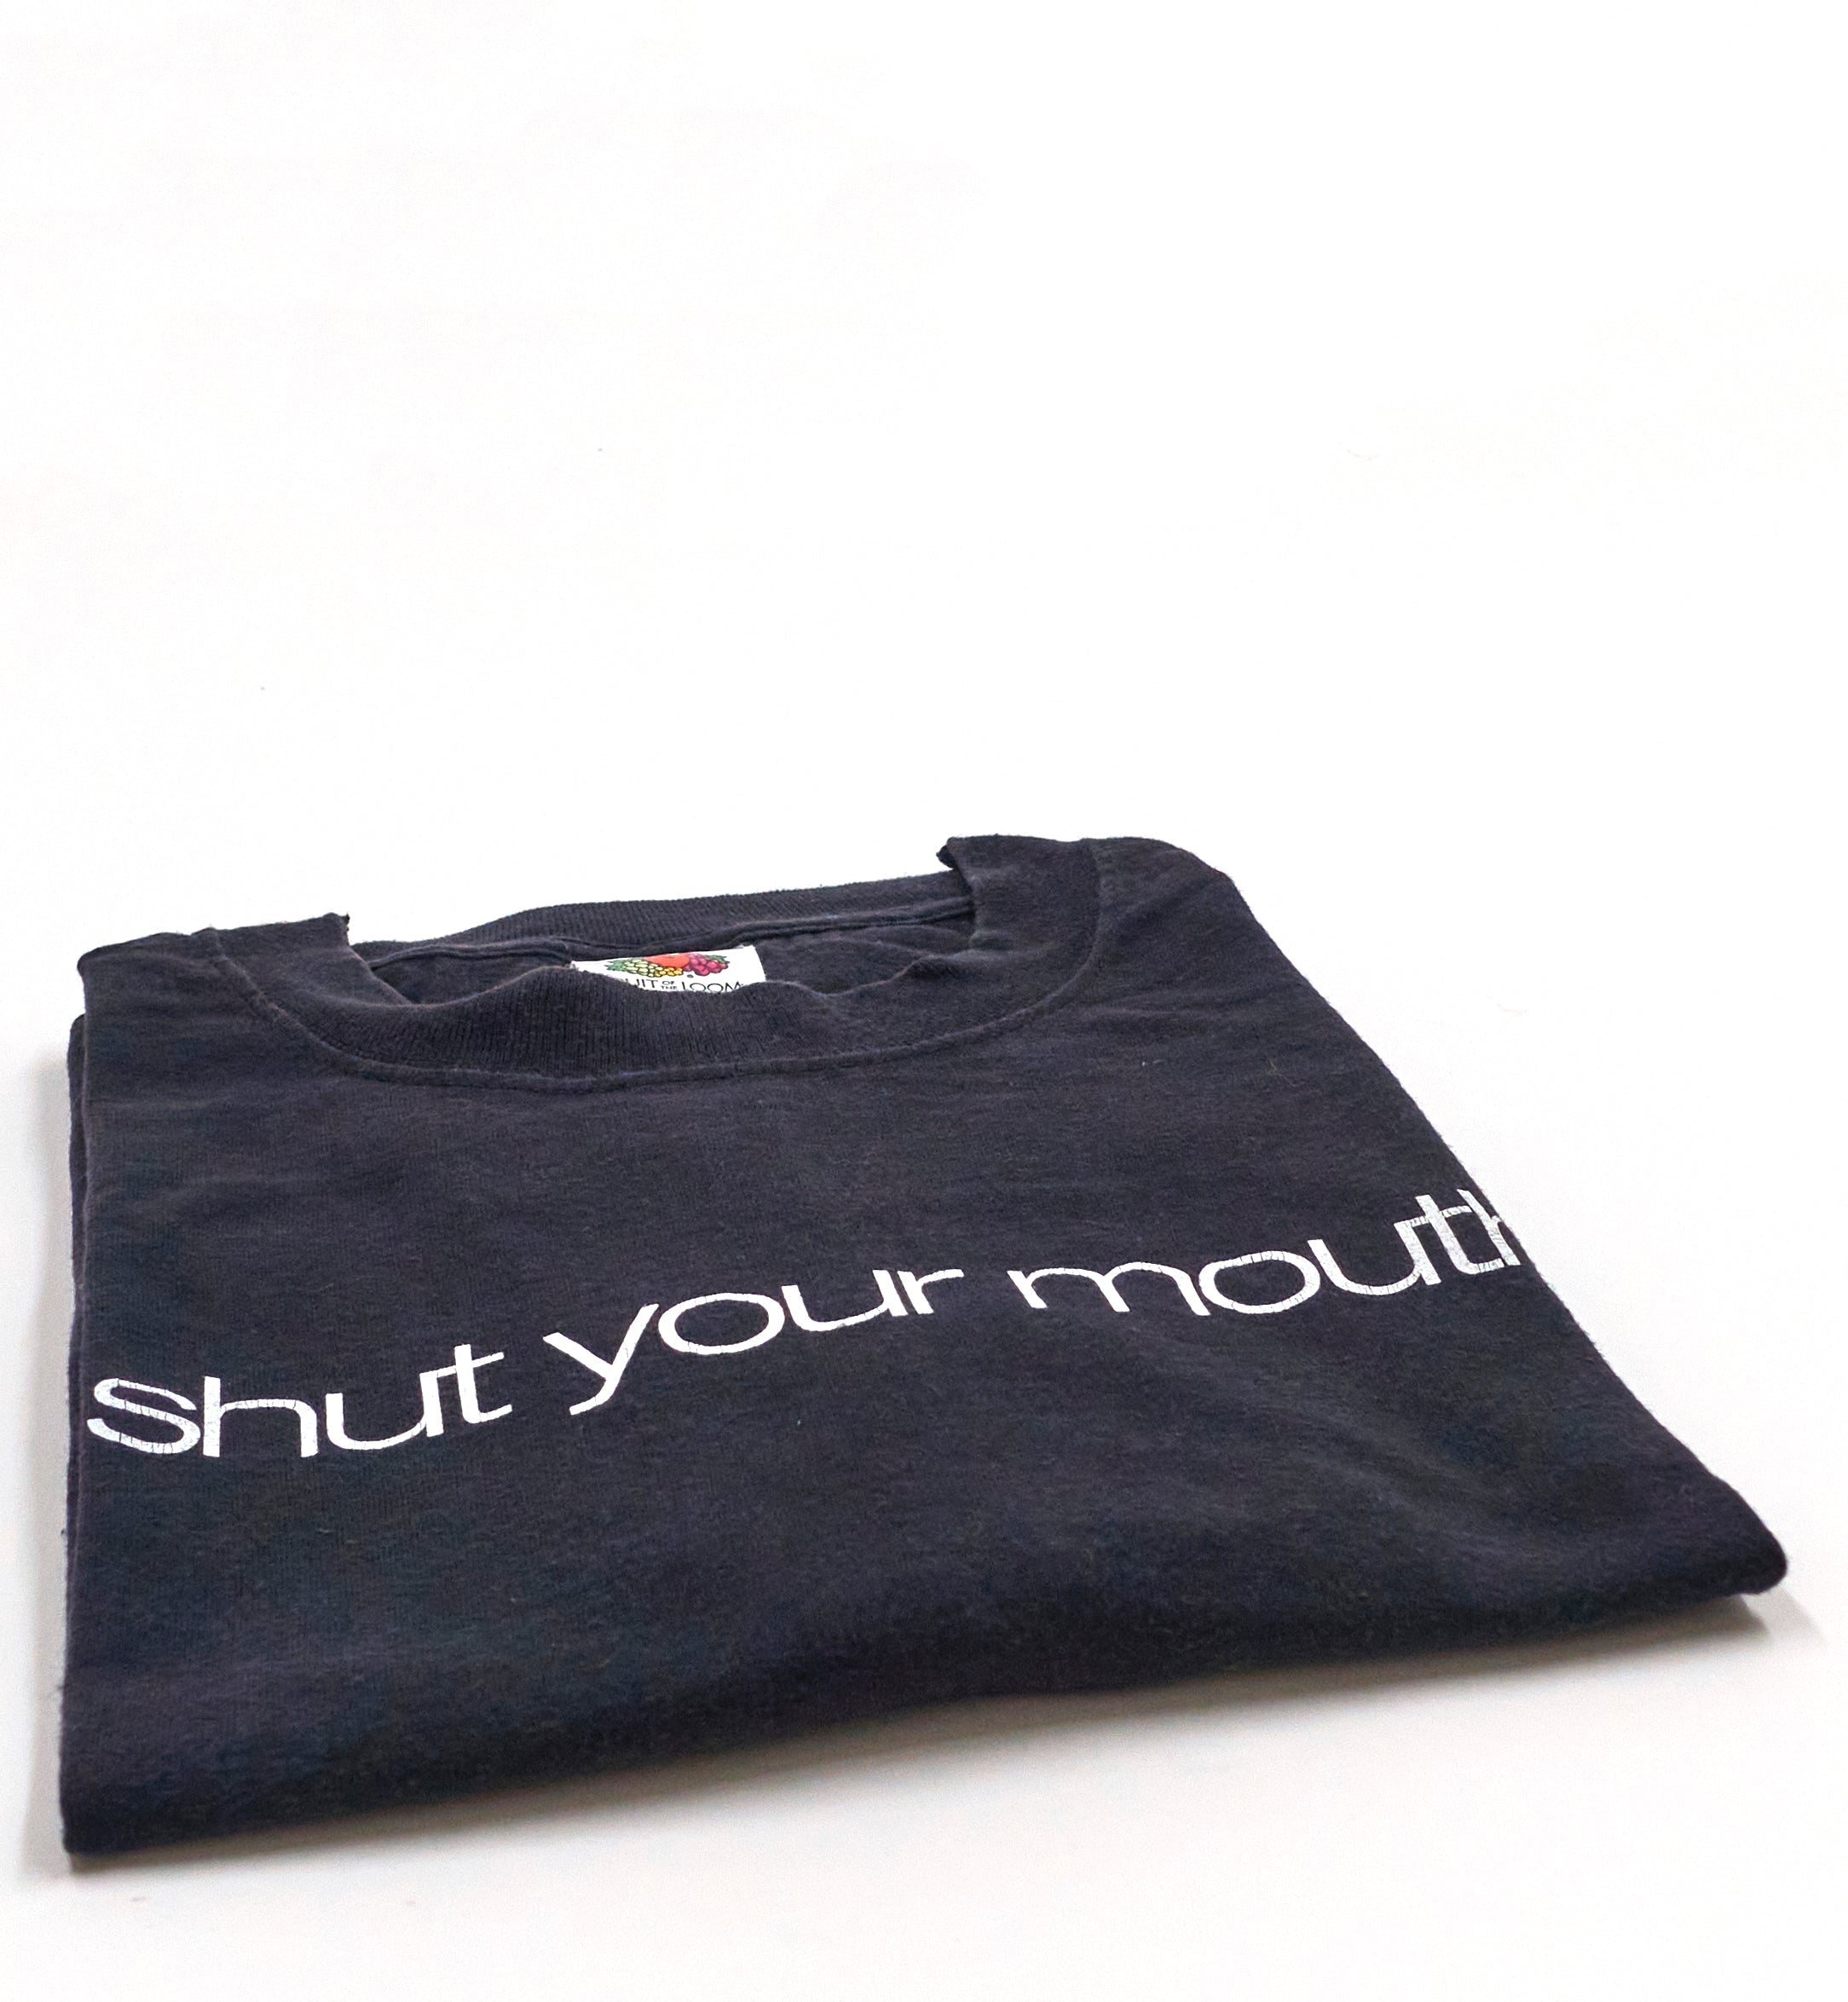 Garbage - Shut Your Mouth 2002 Tour Shirt Size Large